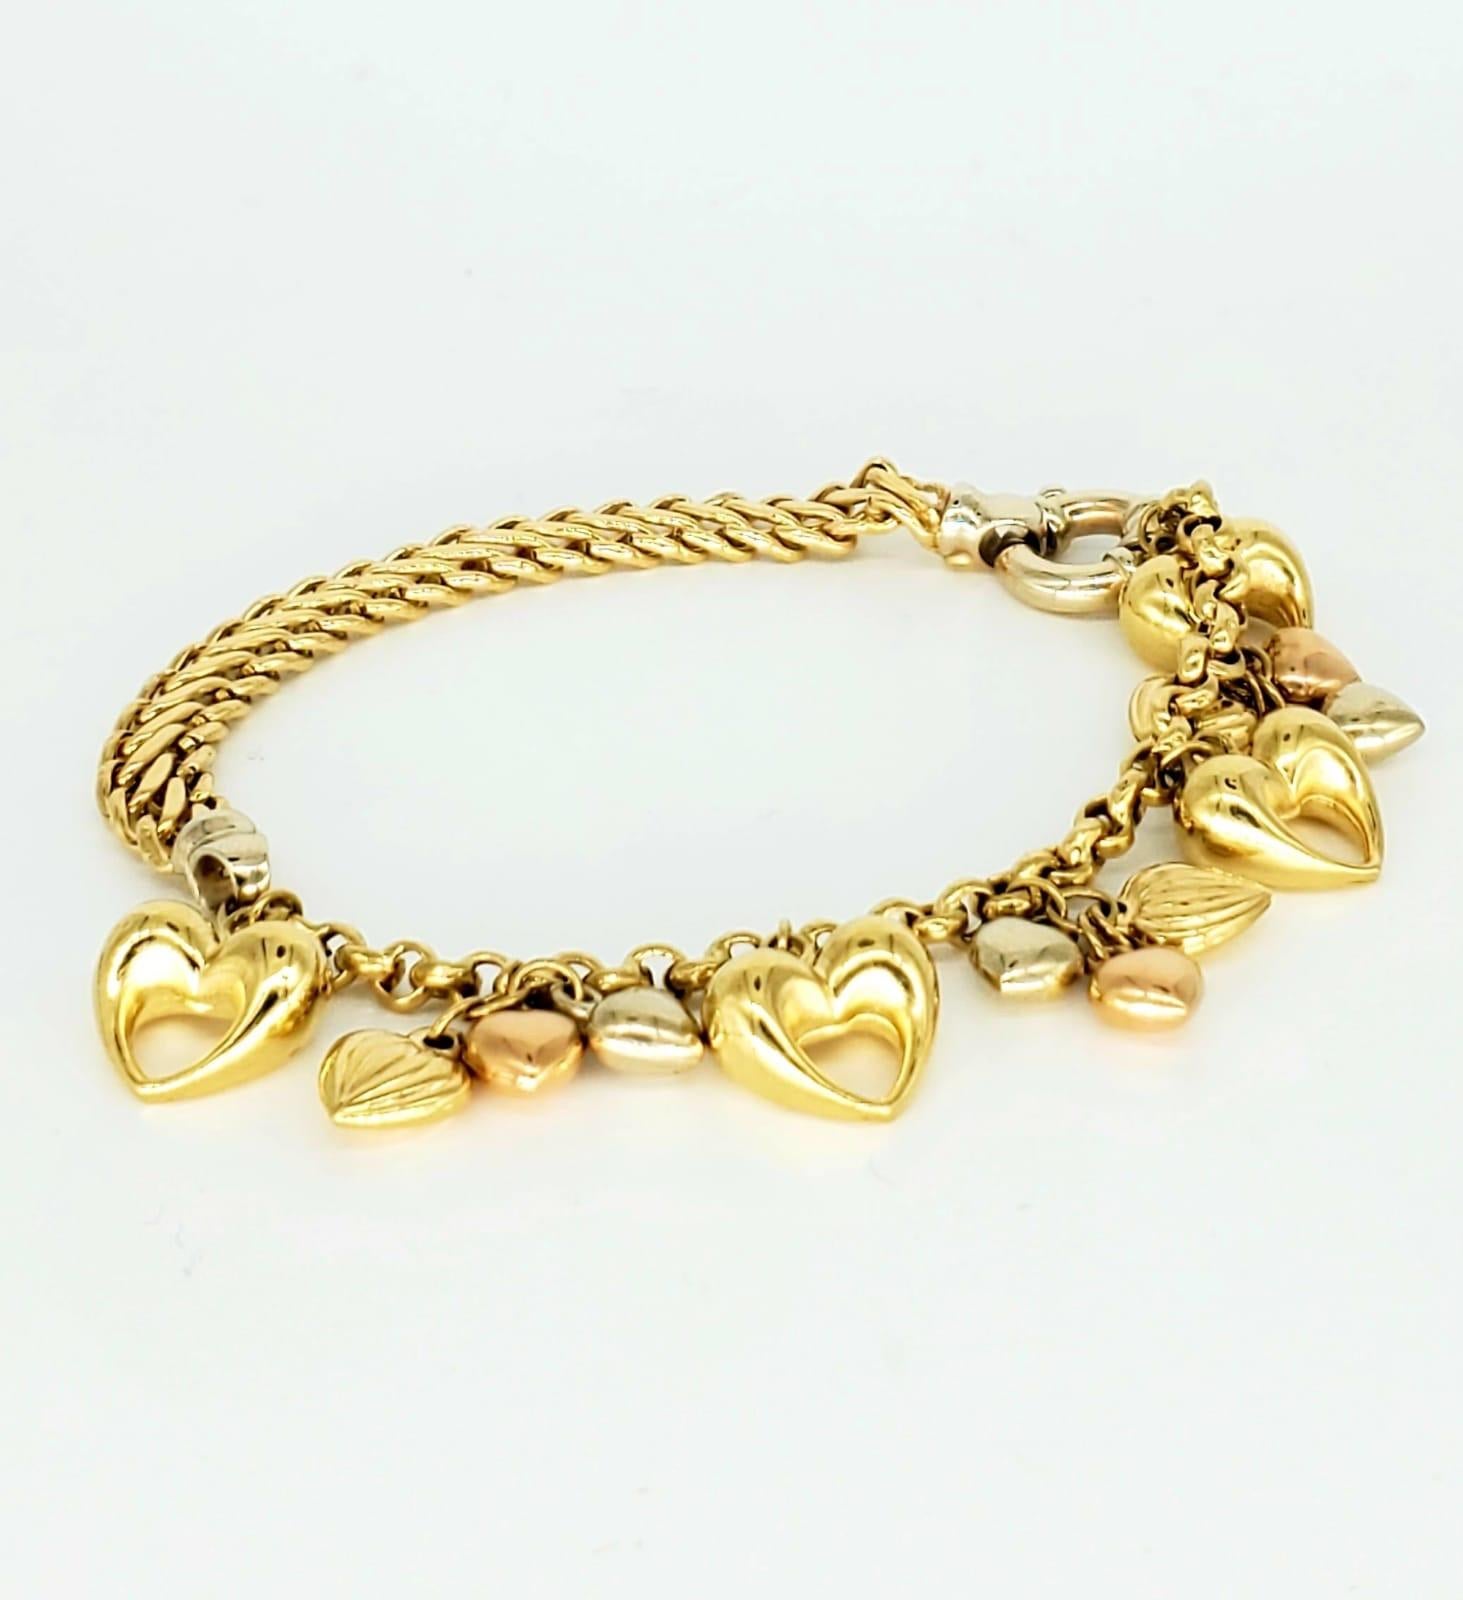 Bracelet Vintage Kingdom of Hearts en or 18k. Le bracelet est magnifique et se remarque en public. Le bracelet mesure 7,5 pouces de long et 6,5 mm de large. Le bracelet est en or 18 carats et présente des cœurs en or jaune, en or blanc et en or